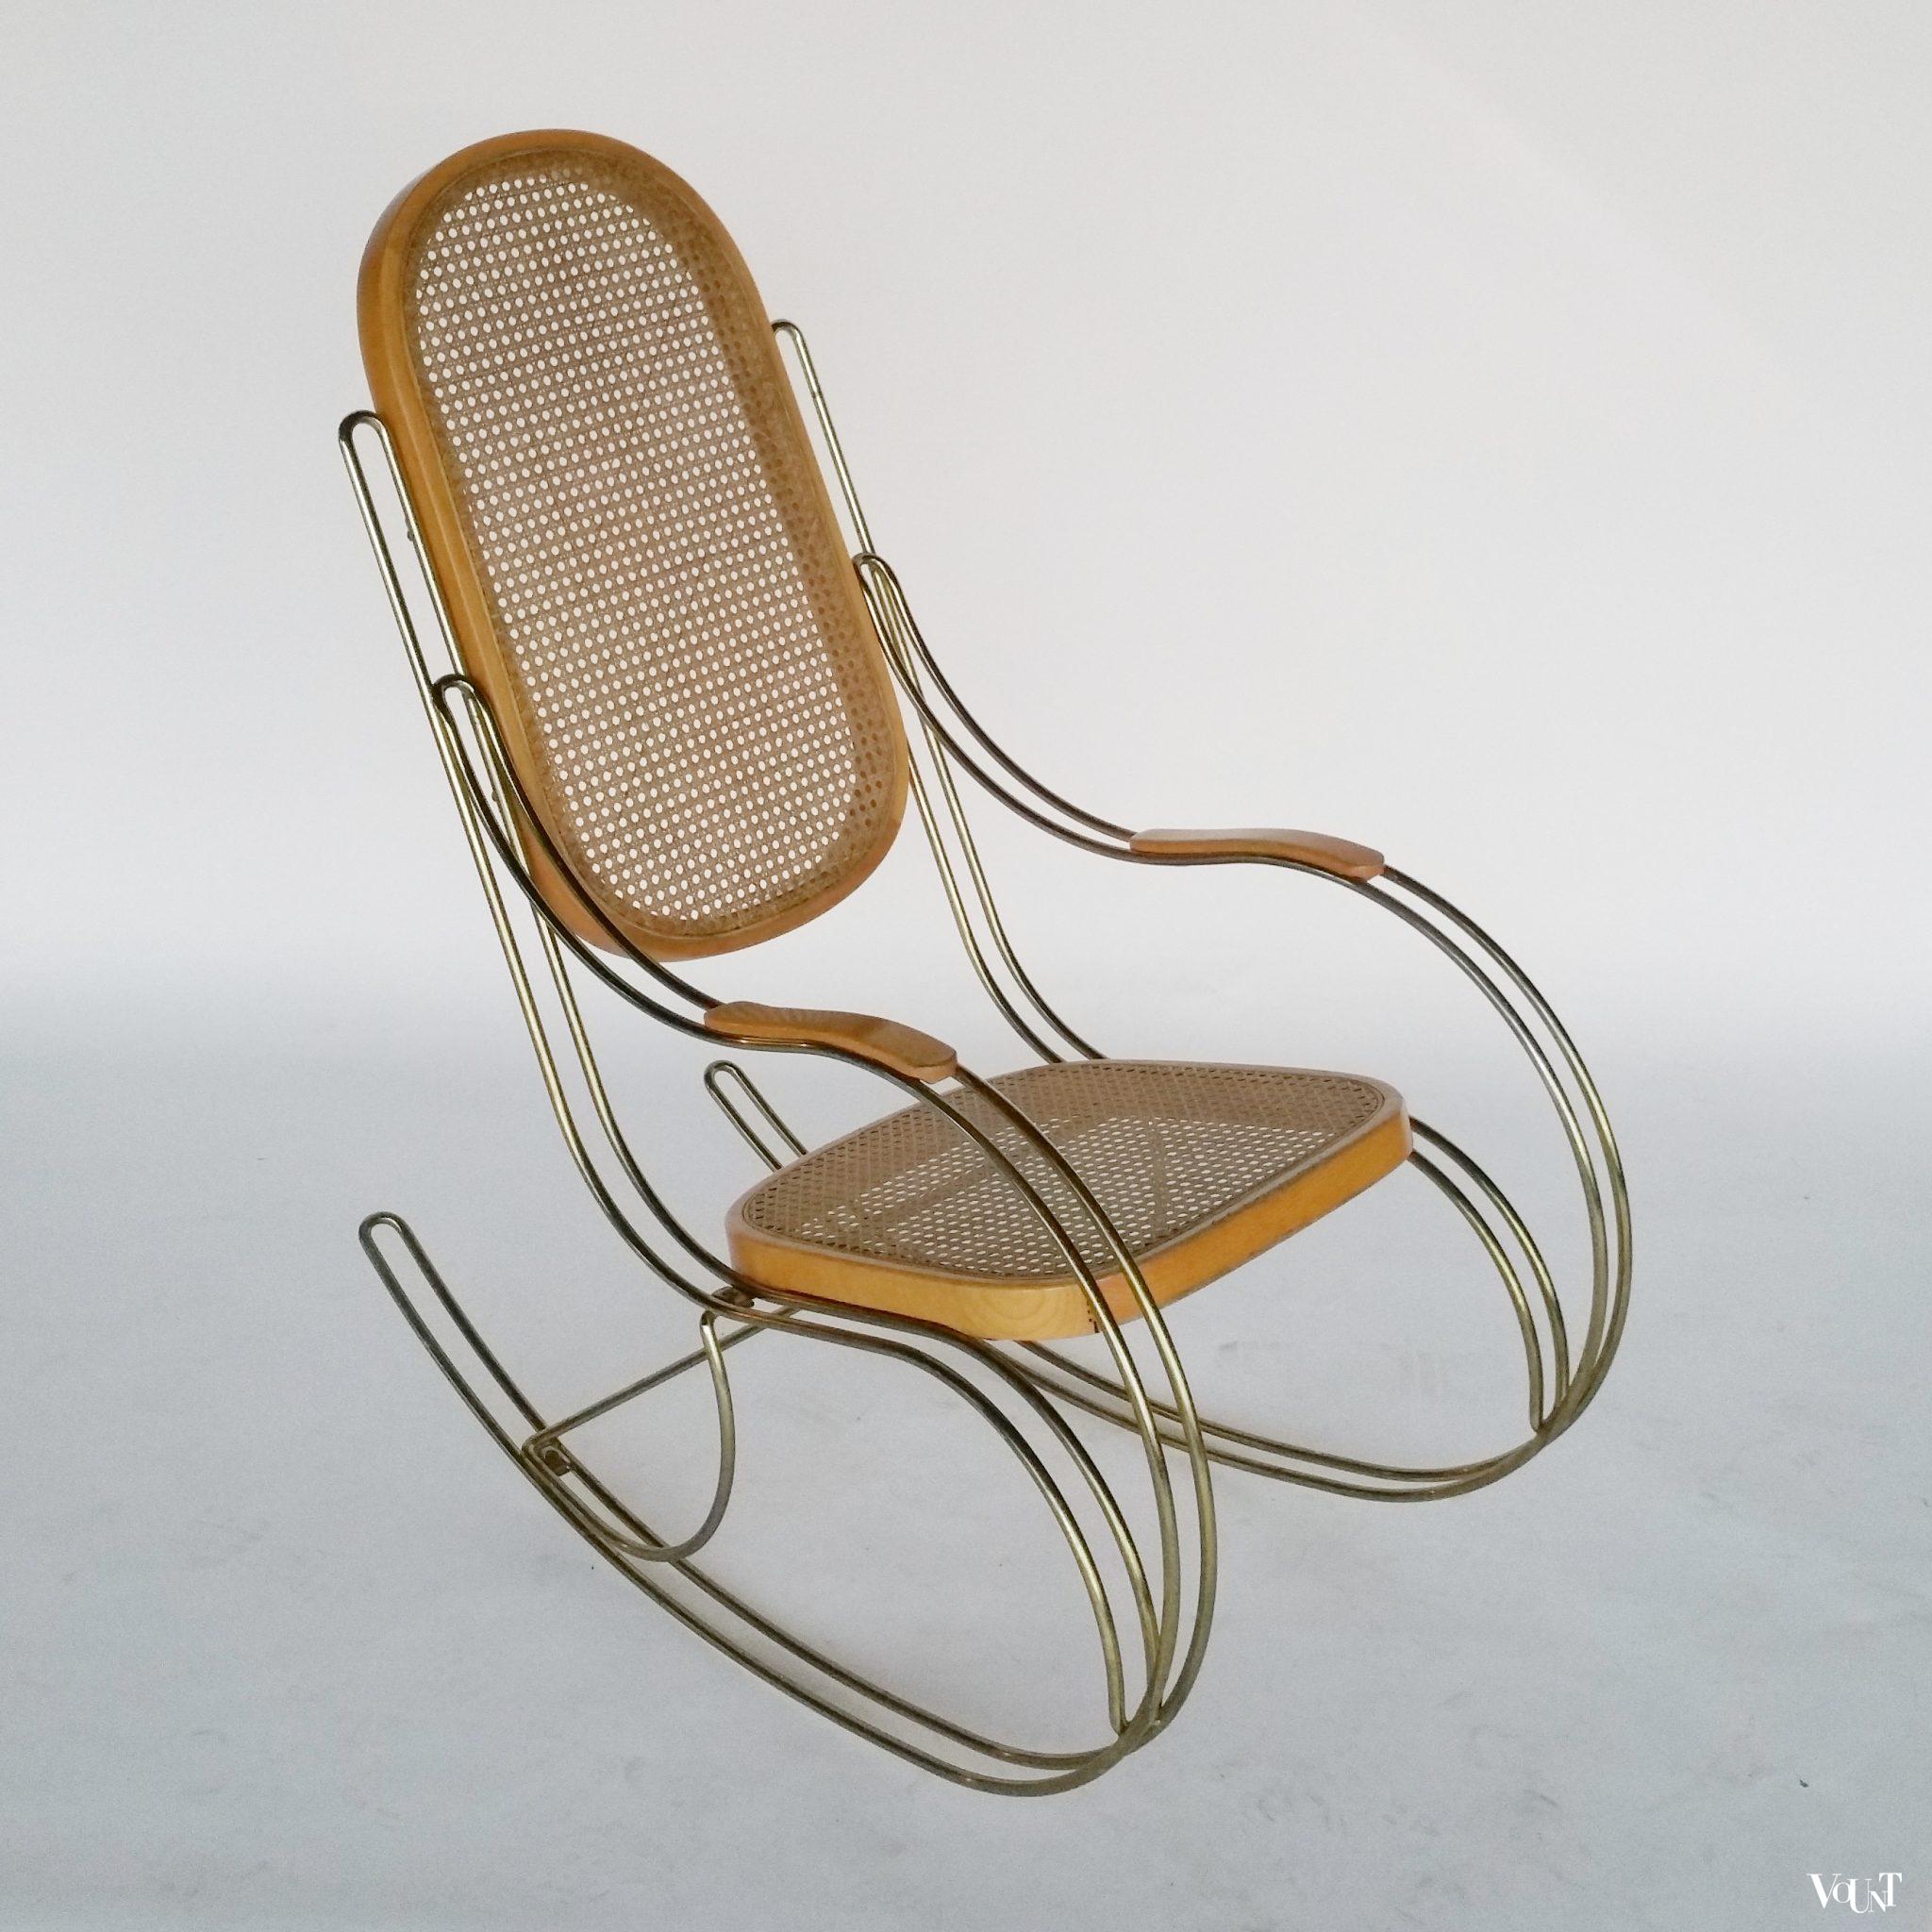 Thonet-stijl schommelstoel met metalen frame